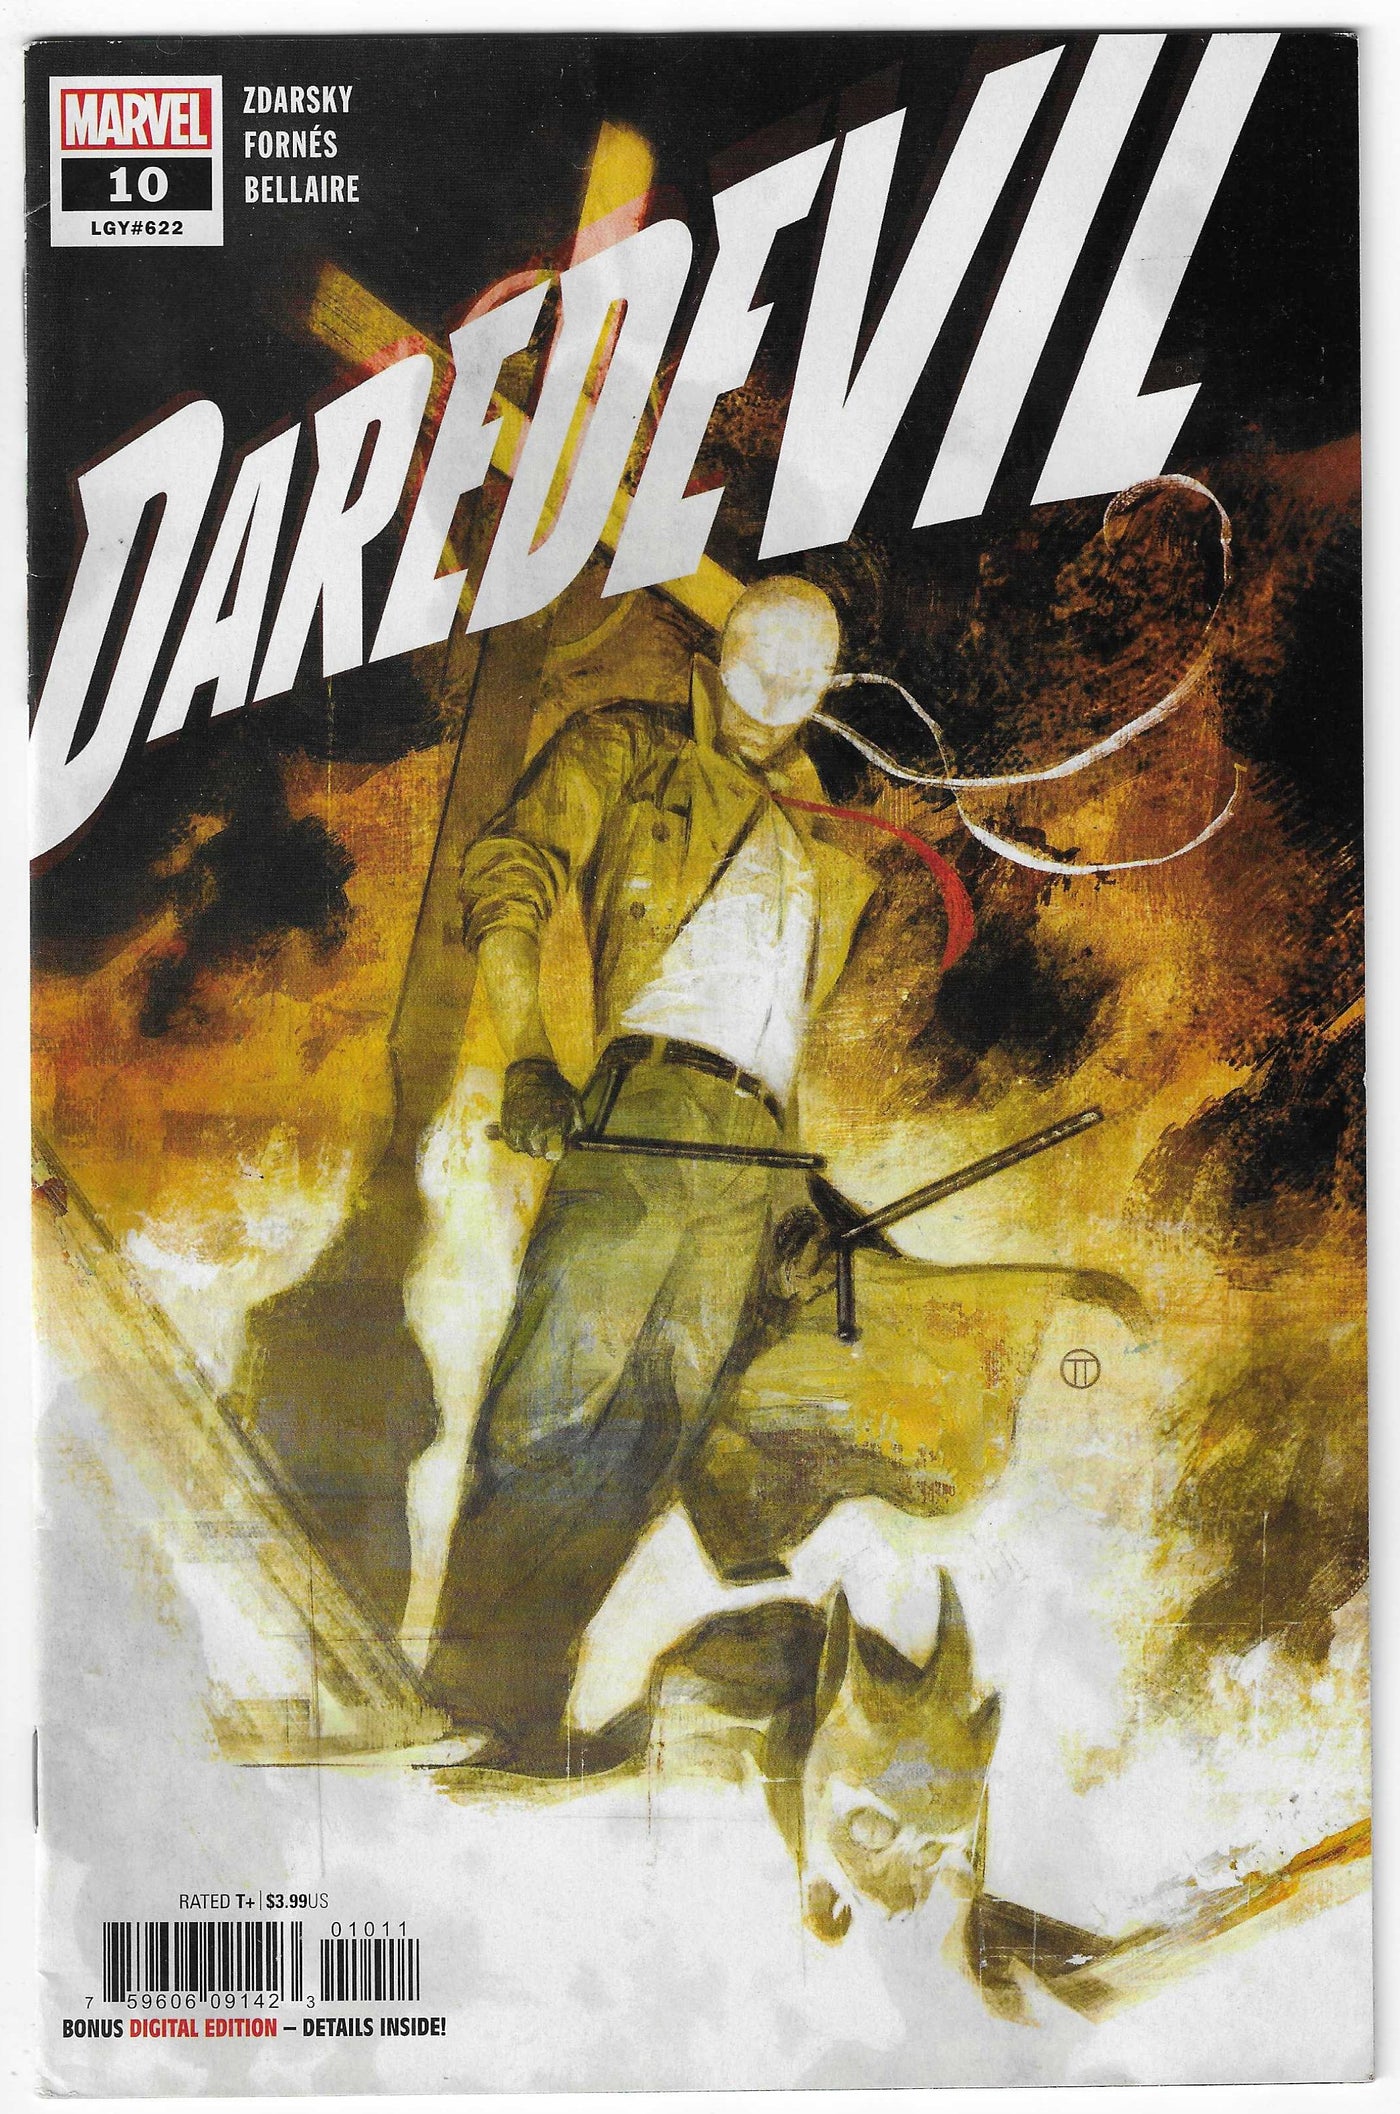 Daredevil (Volume 6) #10